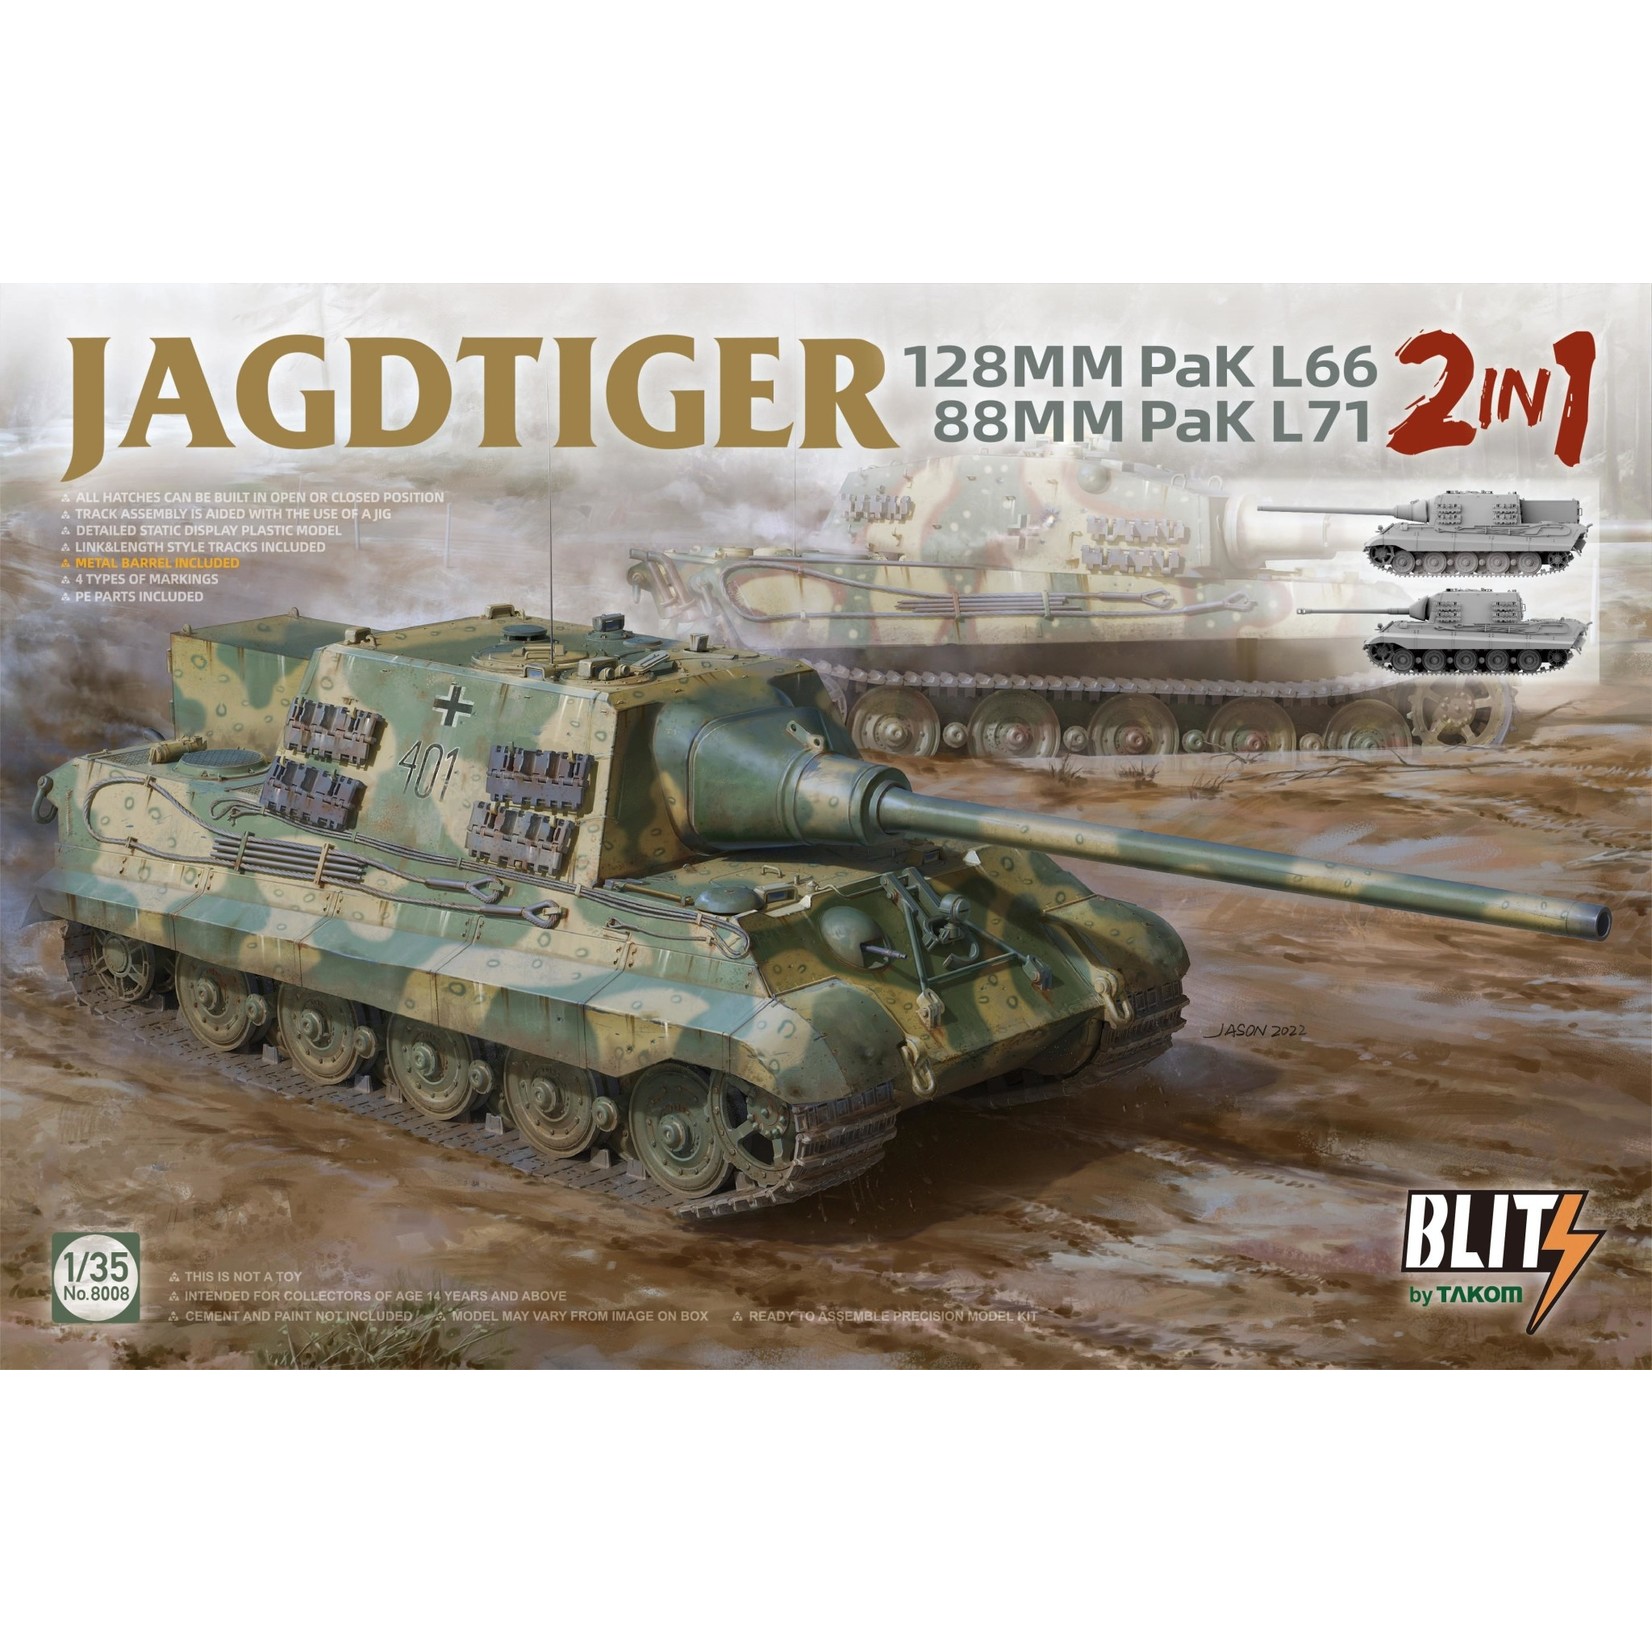 Takom TAK8008 Jagdtiger 2in1 122mm Pak L66 & 88mm Pak L71 (1/35)